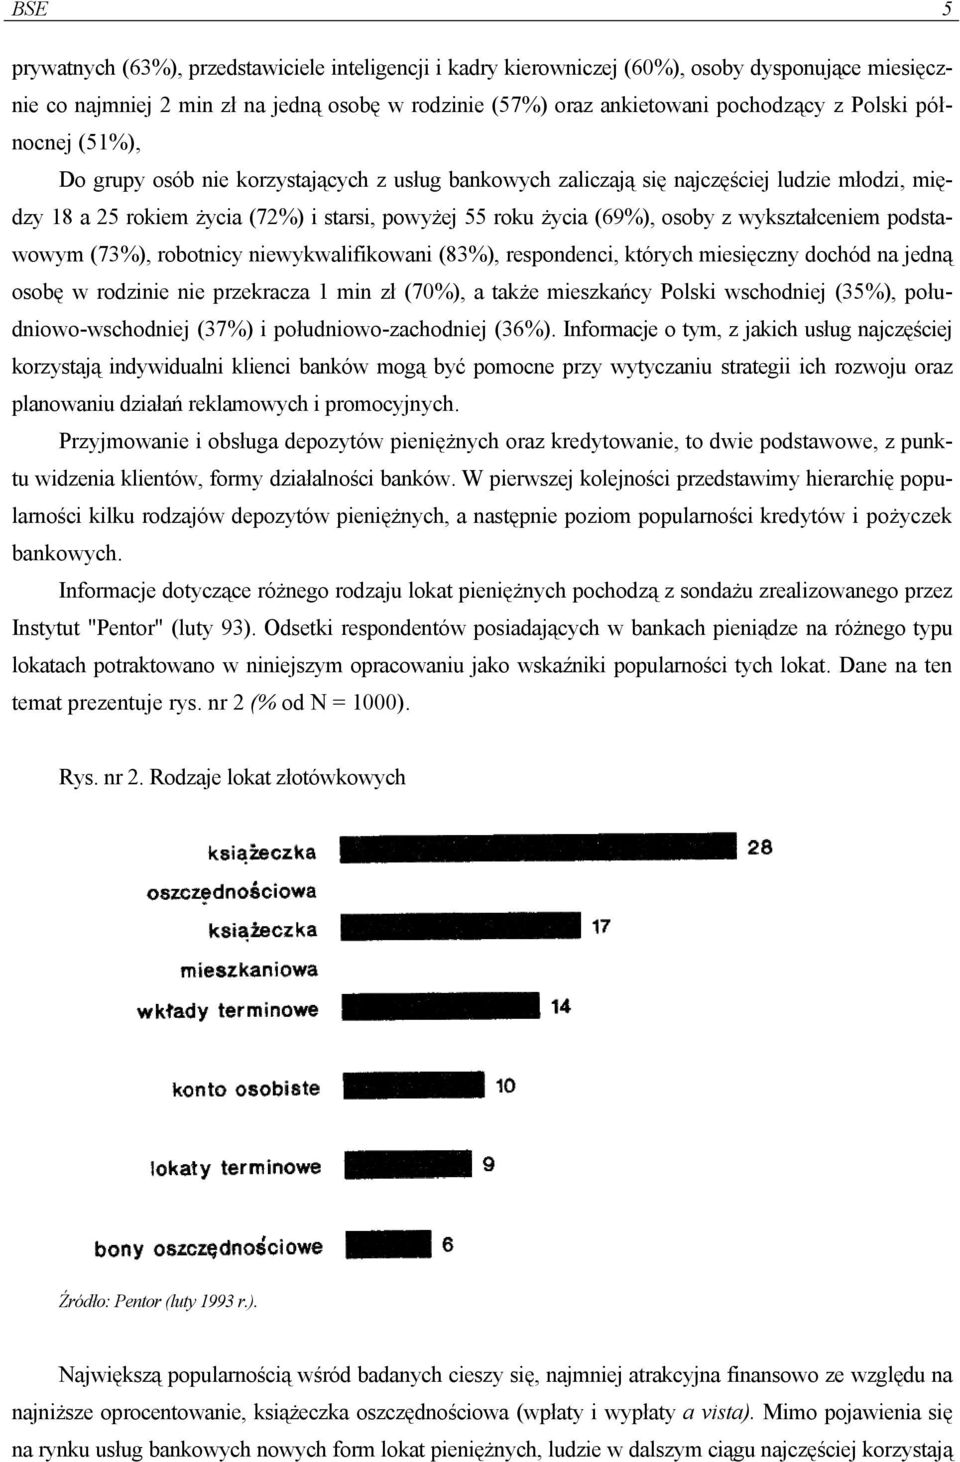 wykształceniem podstawowym (73%), robotnicy niewykwalifikowani (83%), respondenci, których miesięczny dochód na jedną osobę w rodzinie nie przekracza 1 min zł (70%), a także mieszkańcy Polski